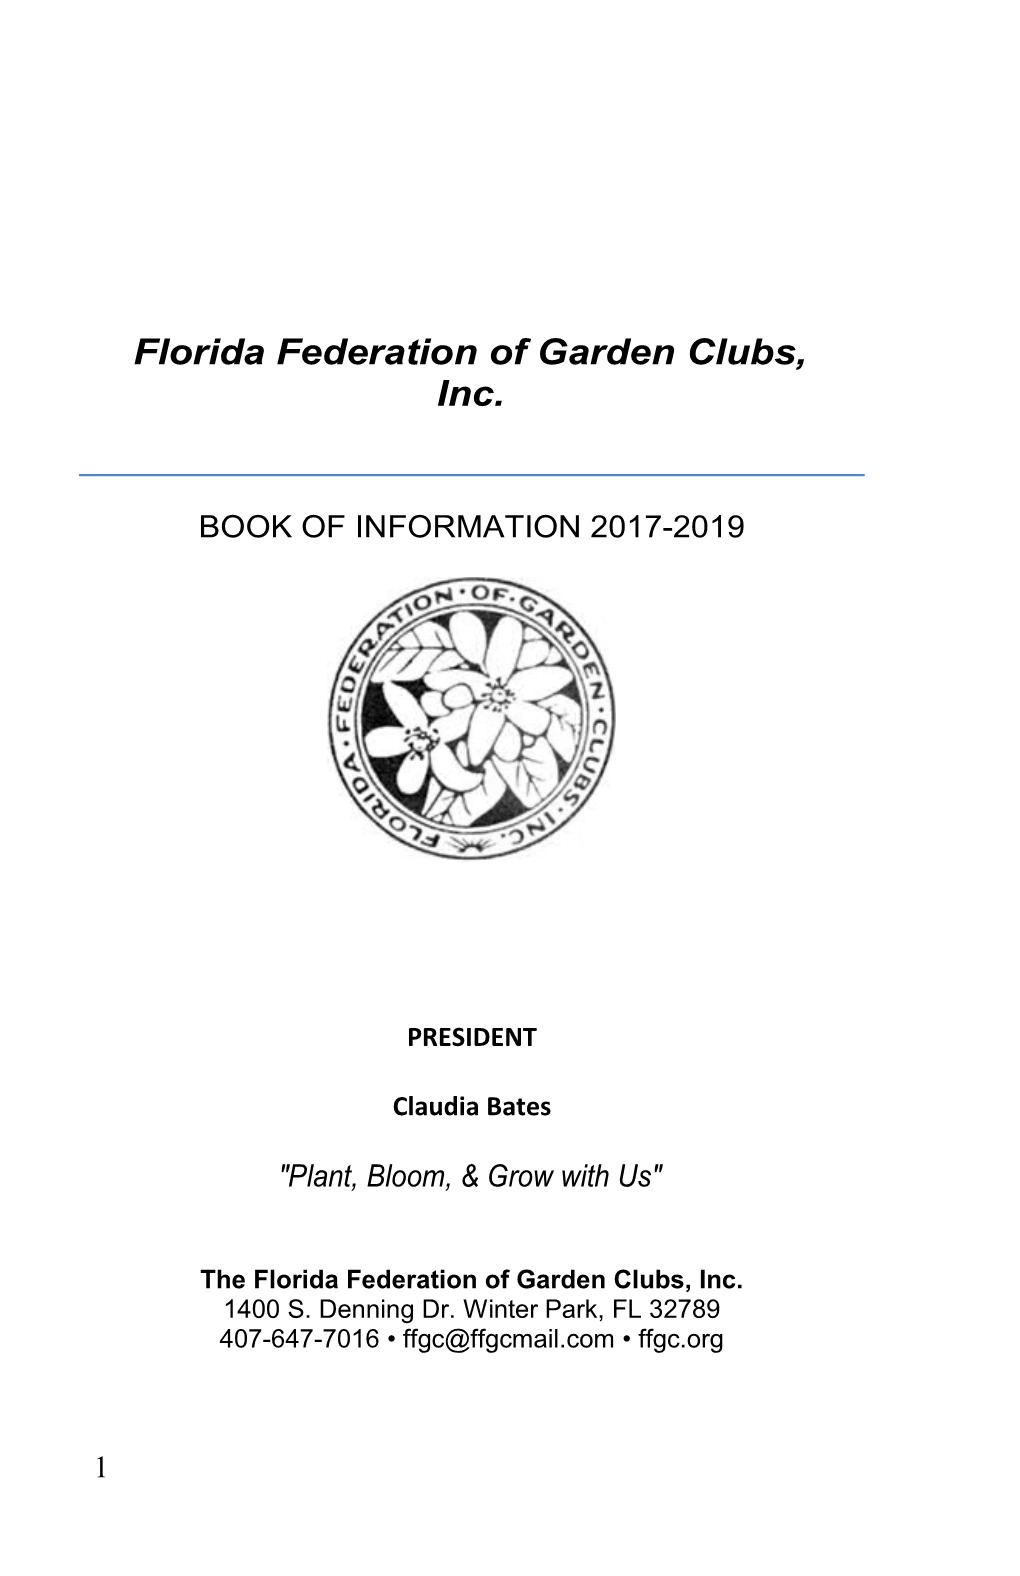 The Florida Federation of Garden Clubs, Inc